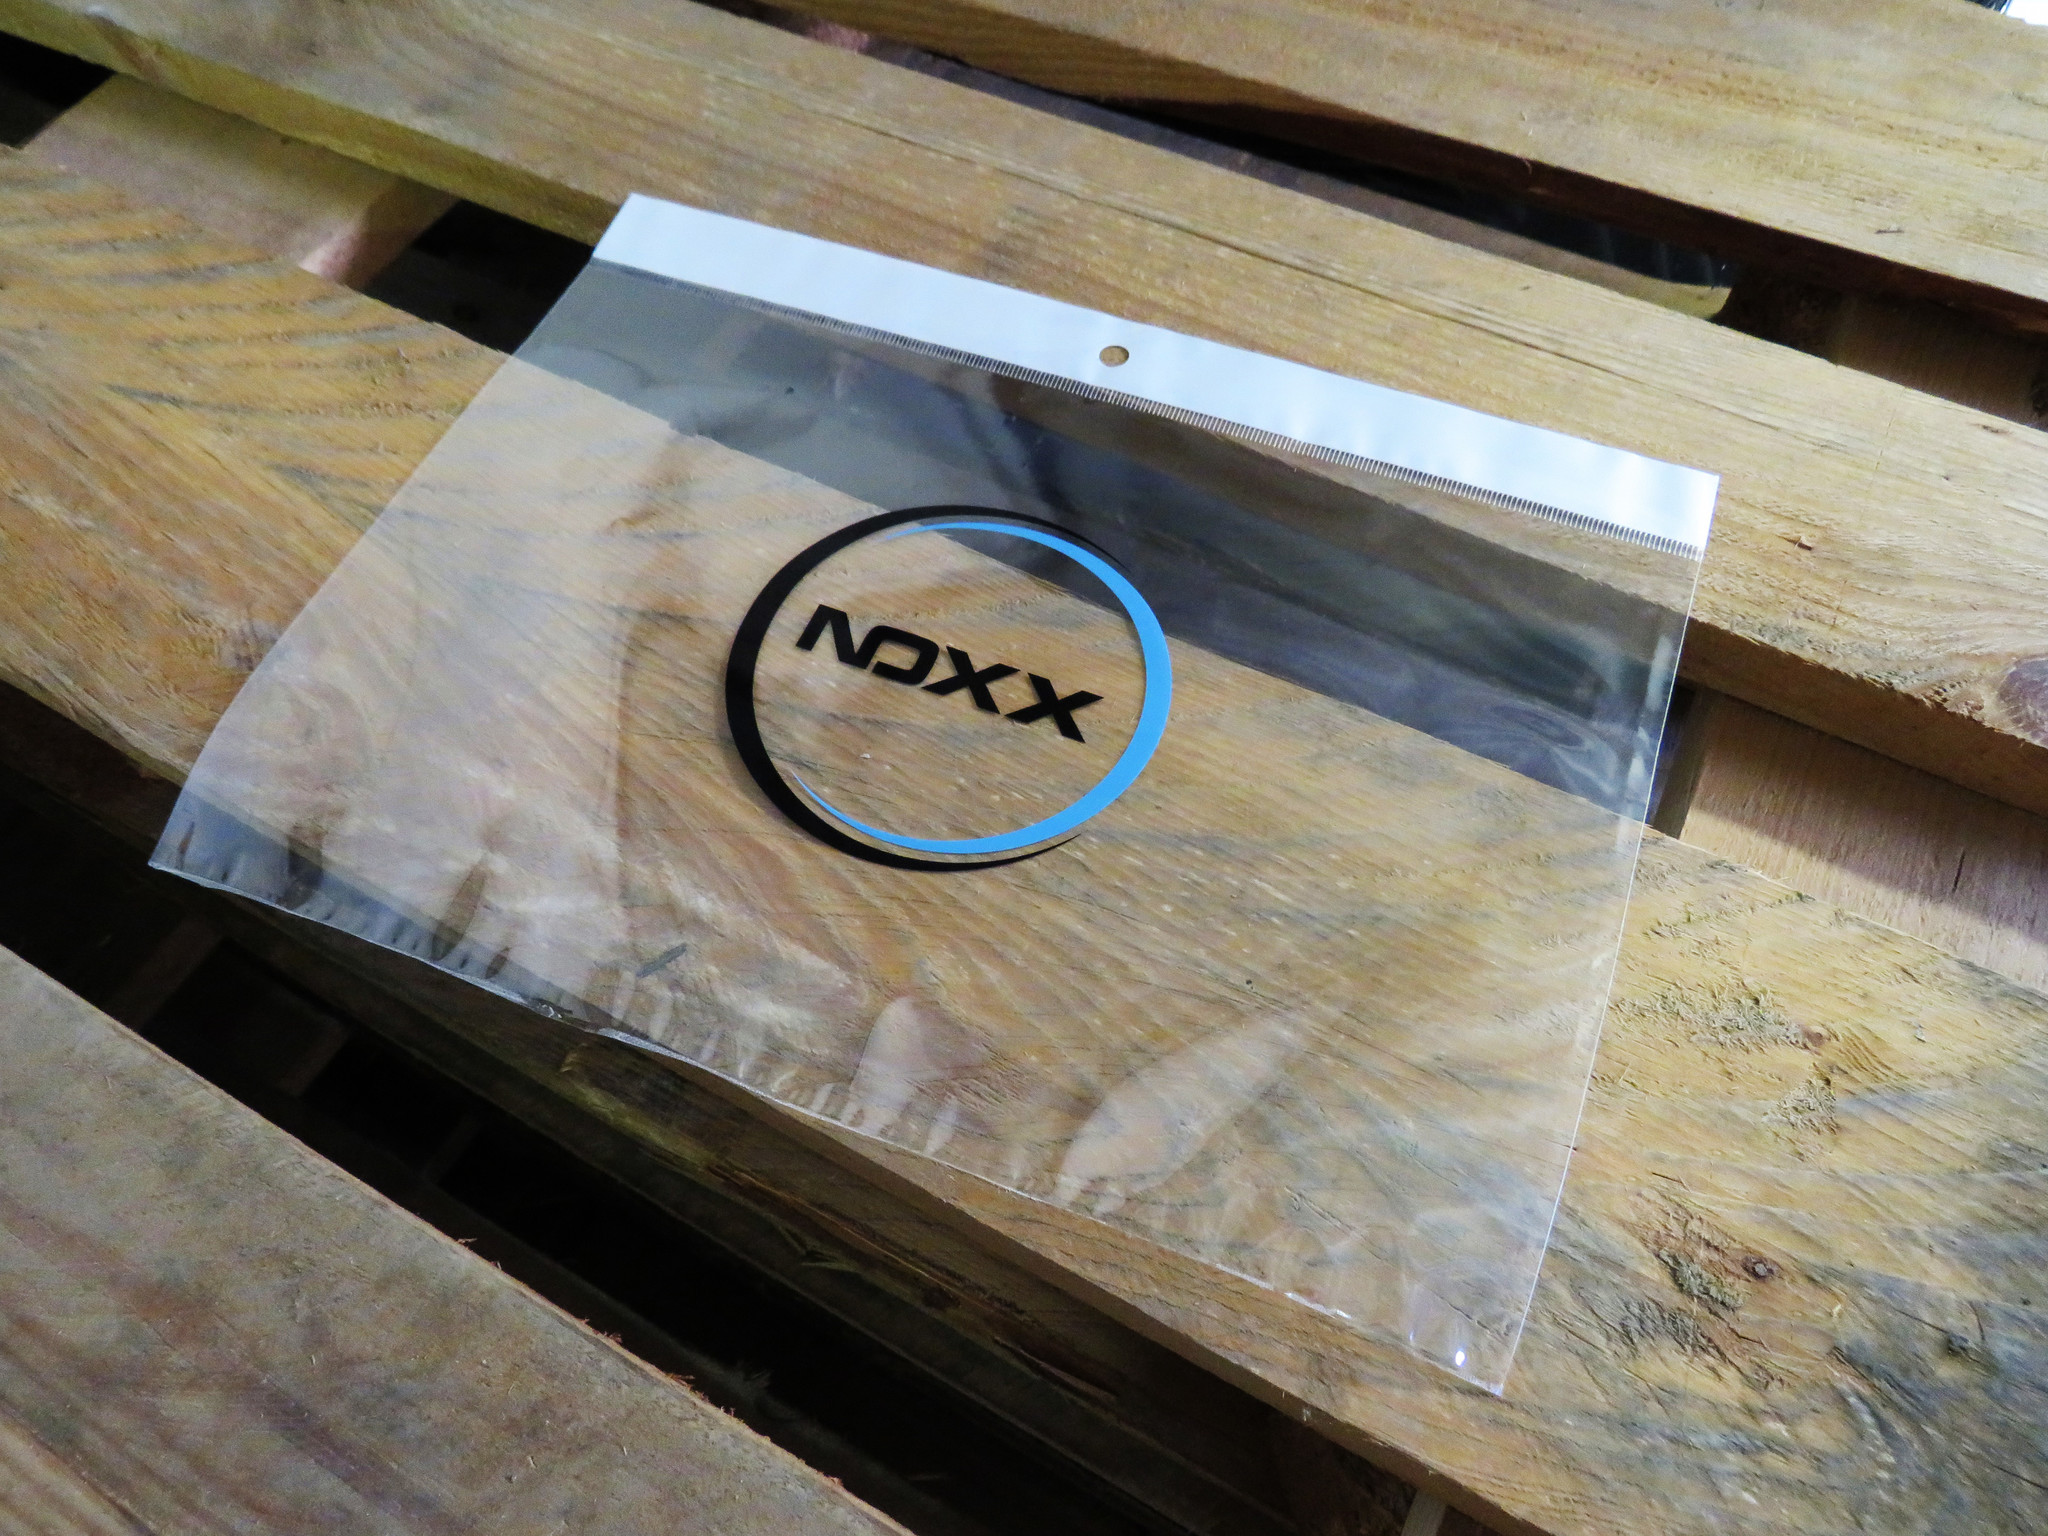 NoXx iPad Mini 6 Hoesje - Don't Touch Me